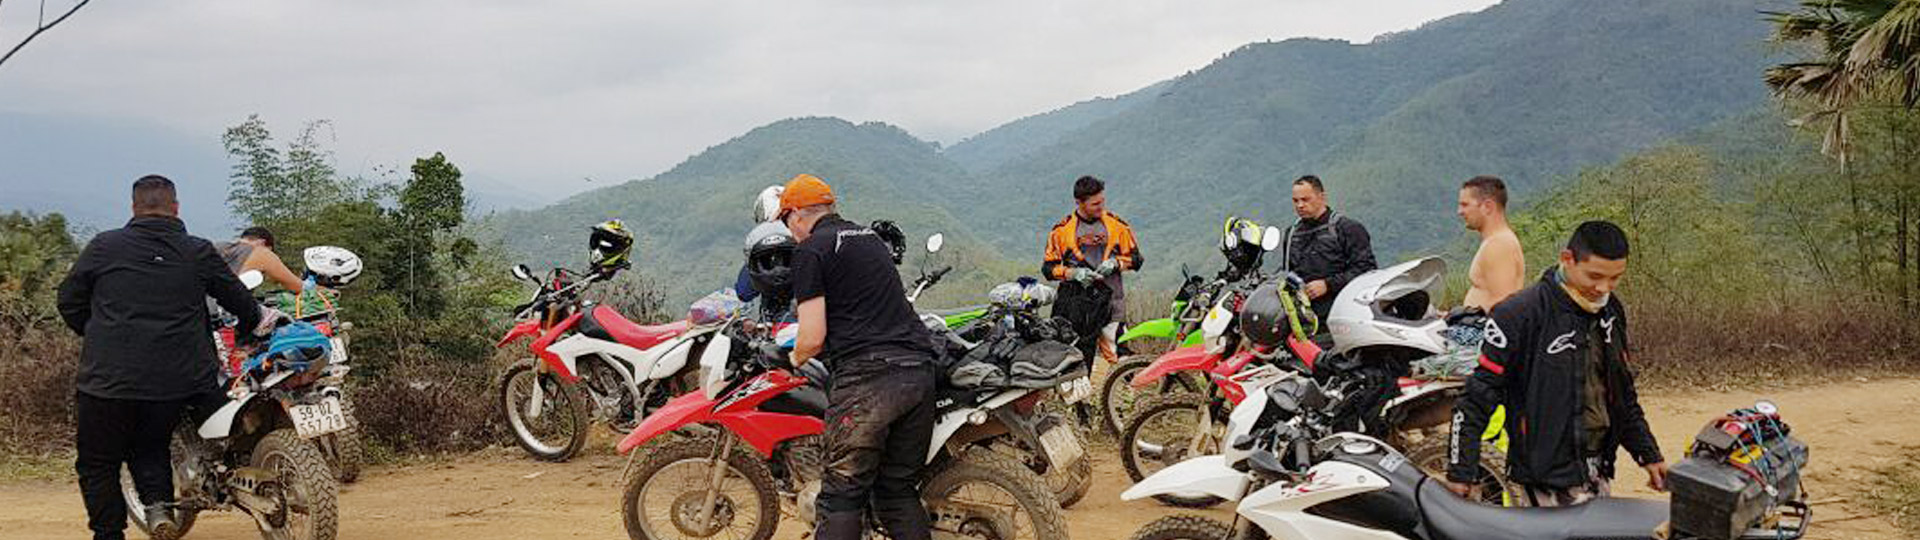 Cambodia Dirt Bike Tours - 12 Days